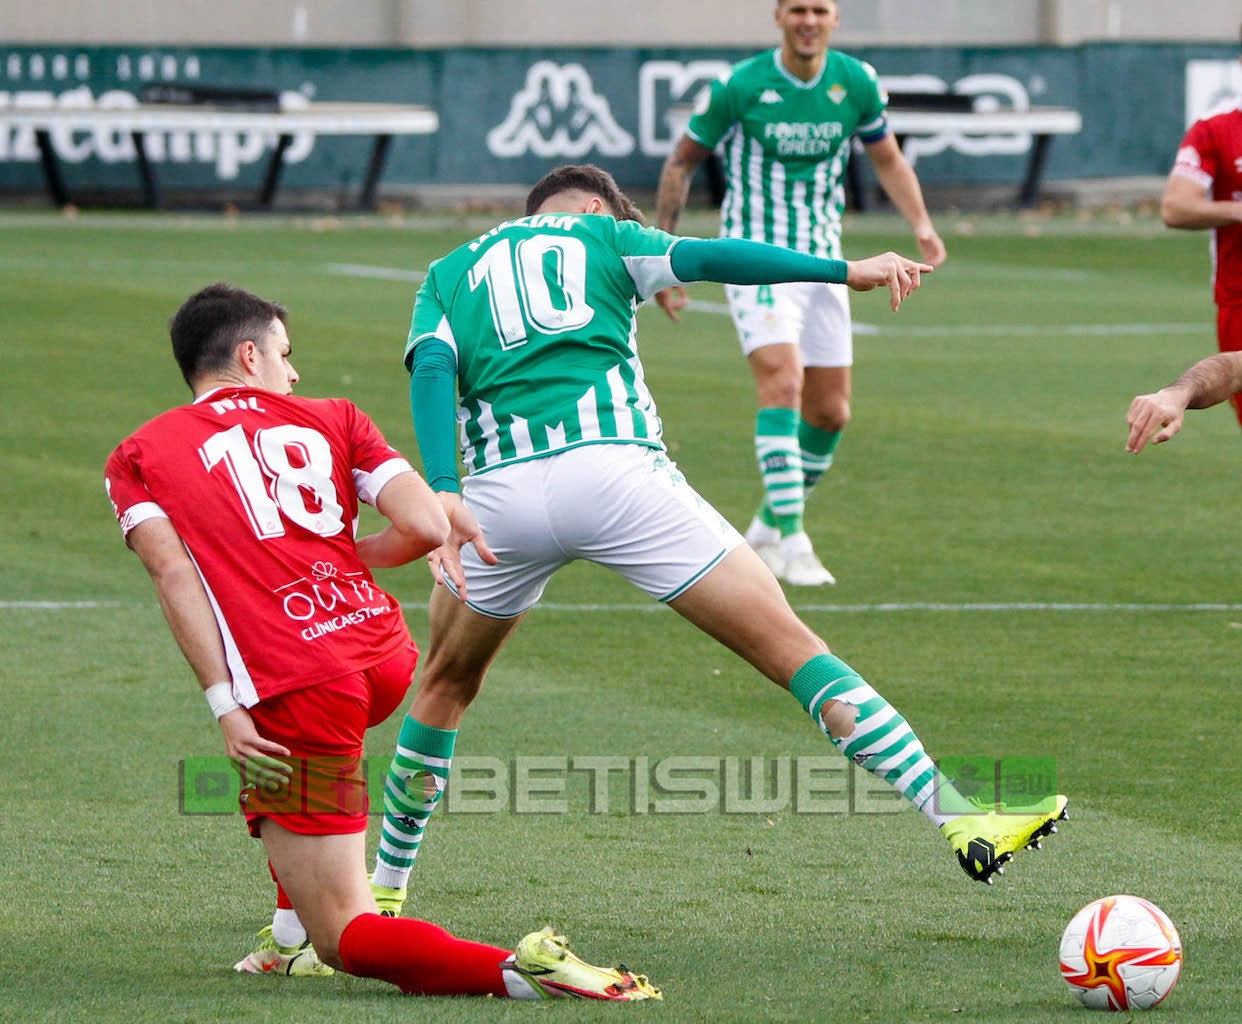 J-21-Betis-Deportivo-vs-N.Tarragona-83